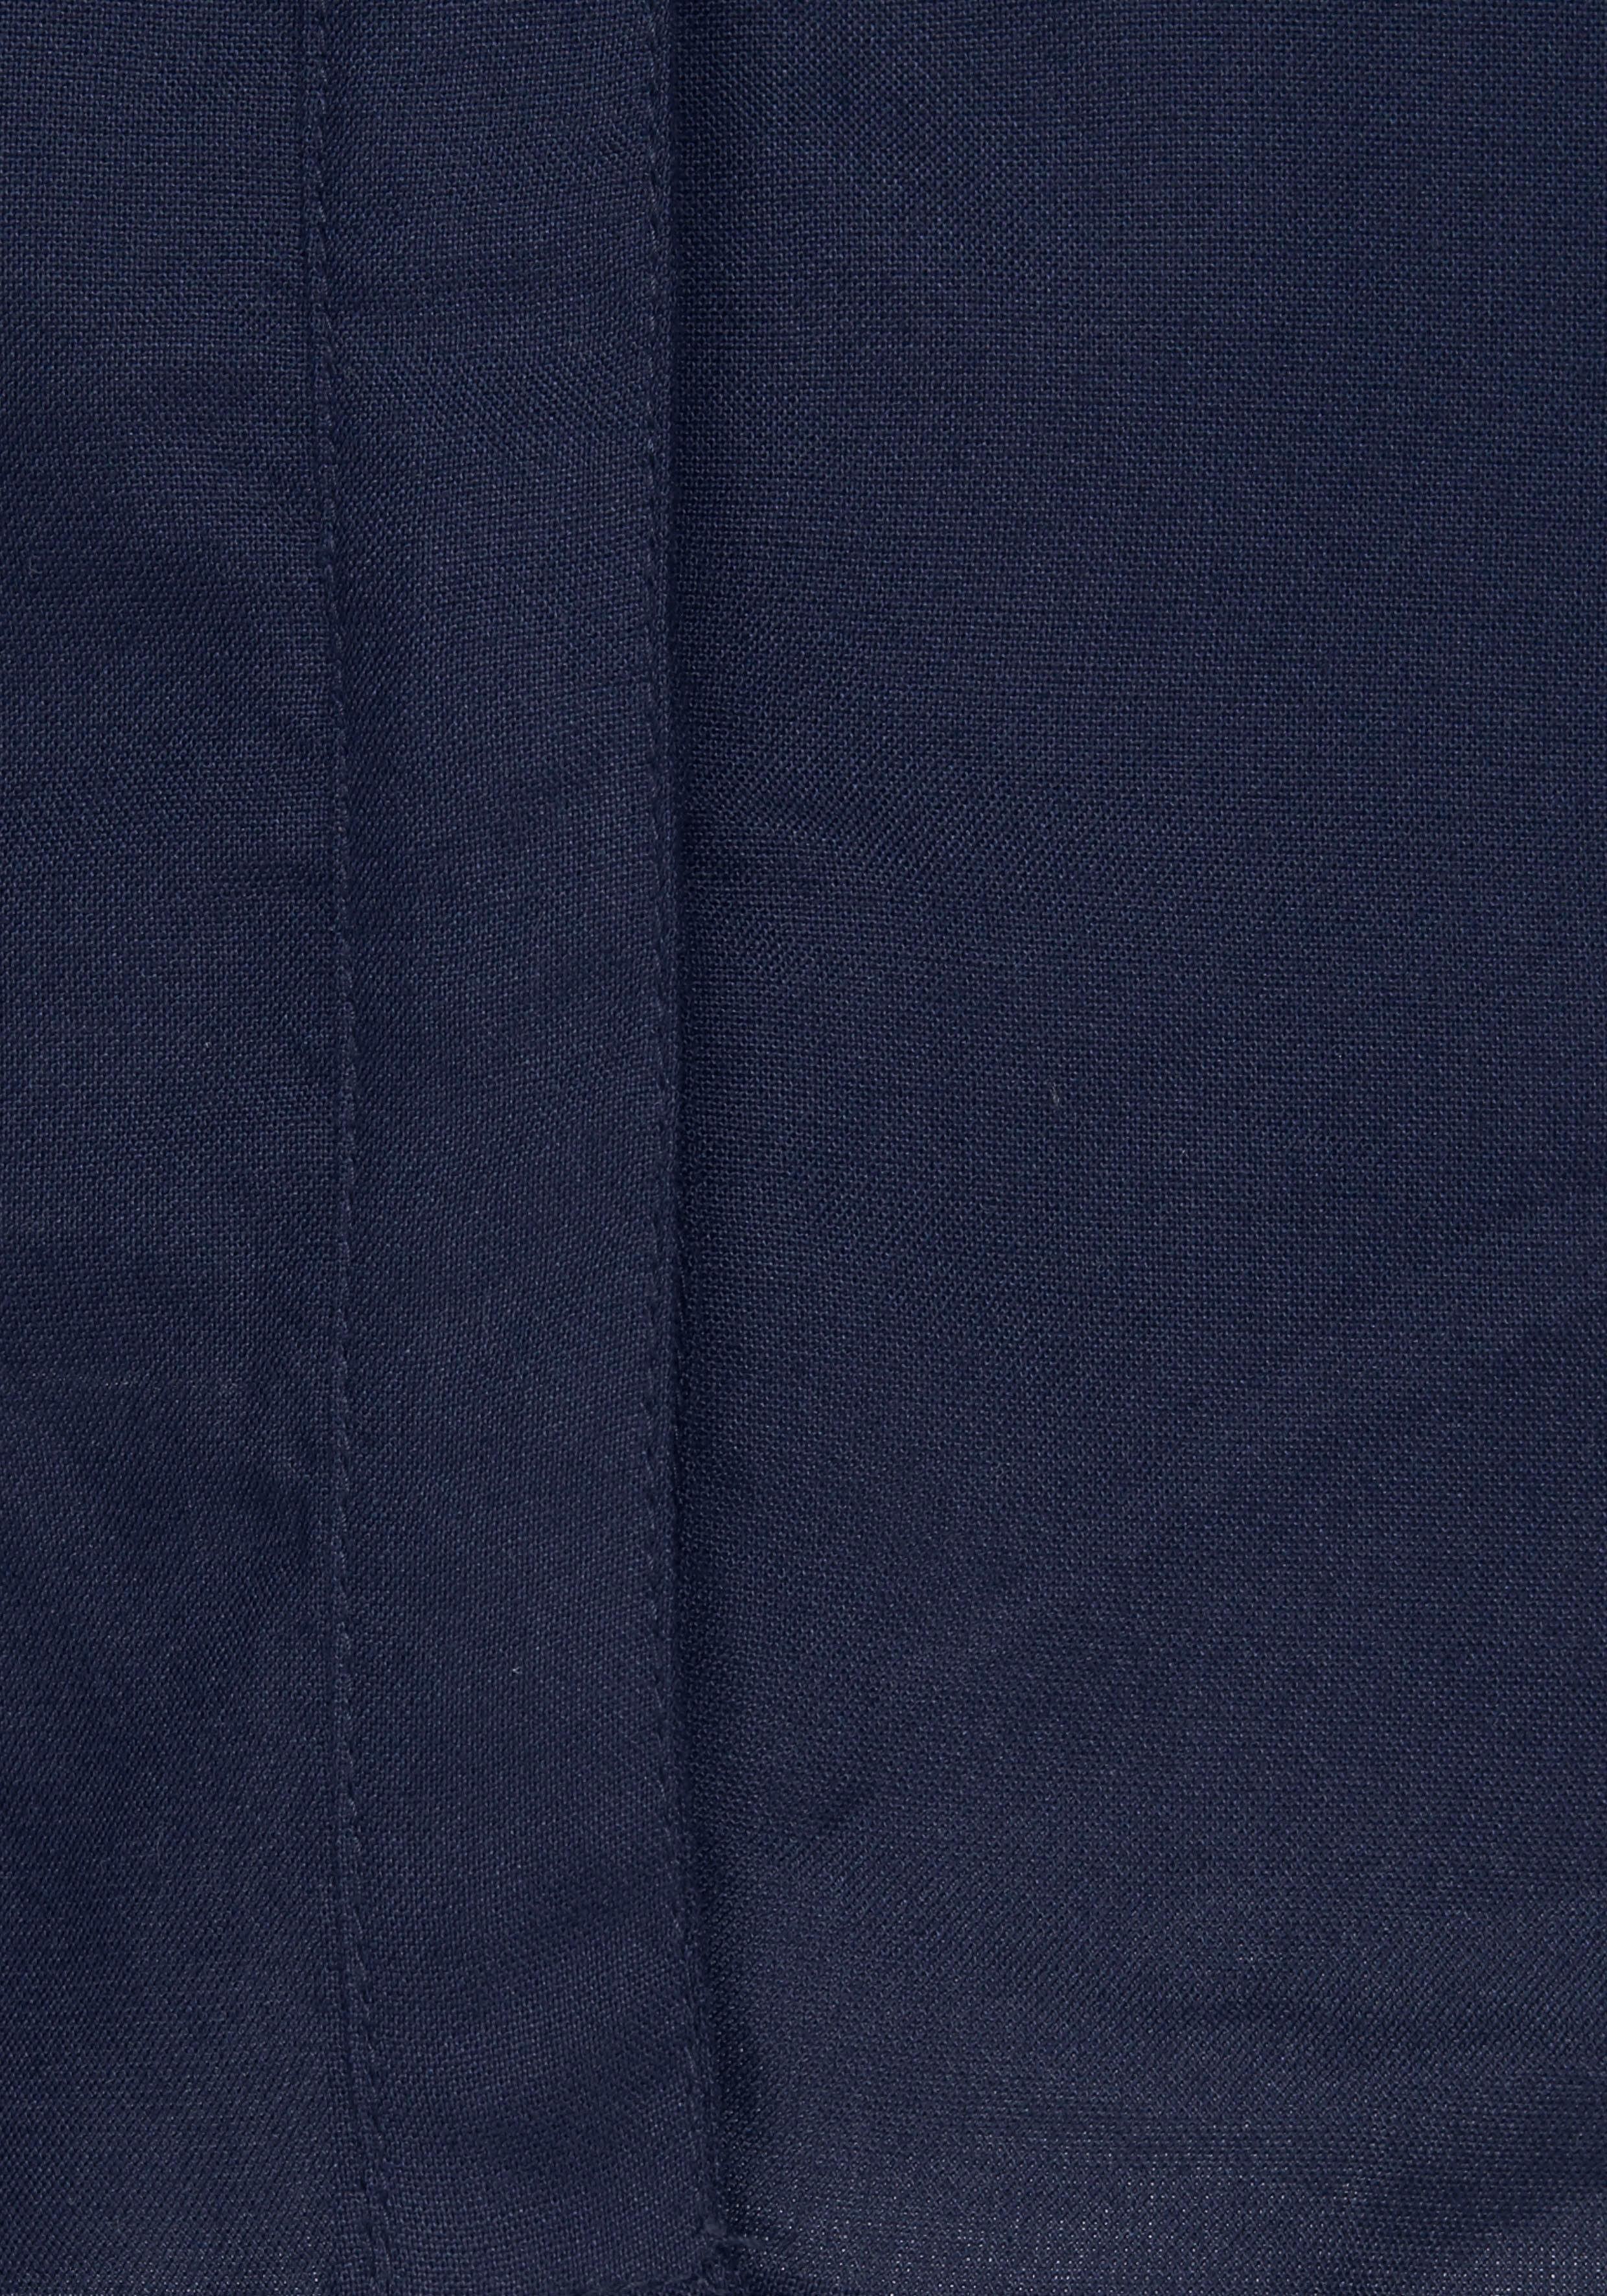 marine AJC (Bluse nachhaltigem Material) aus weich Hemdbluse aus Viskose fließender